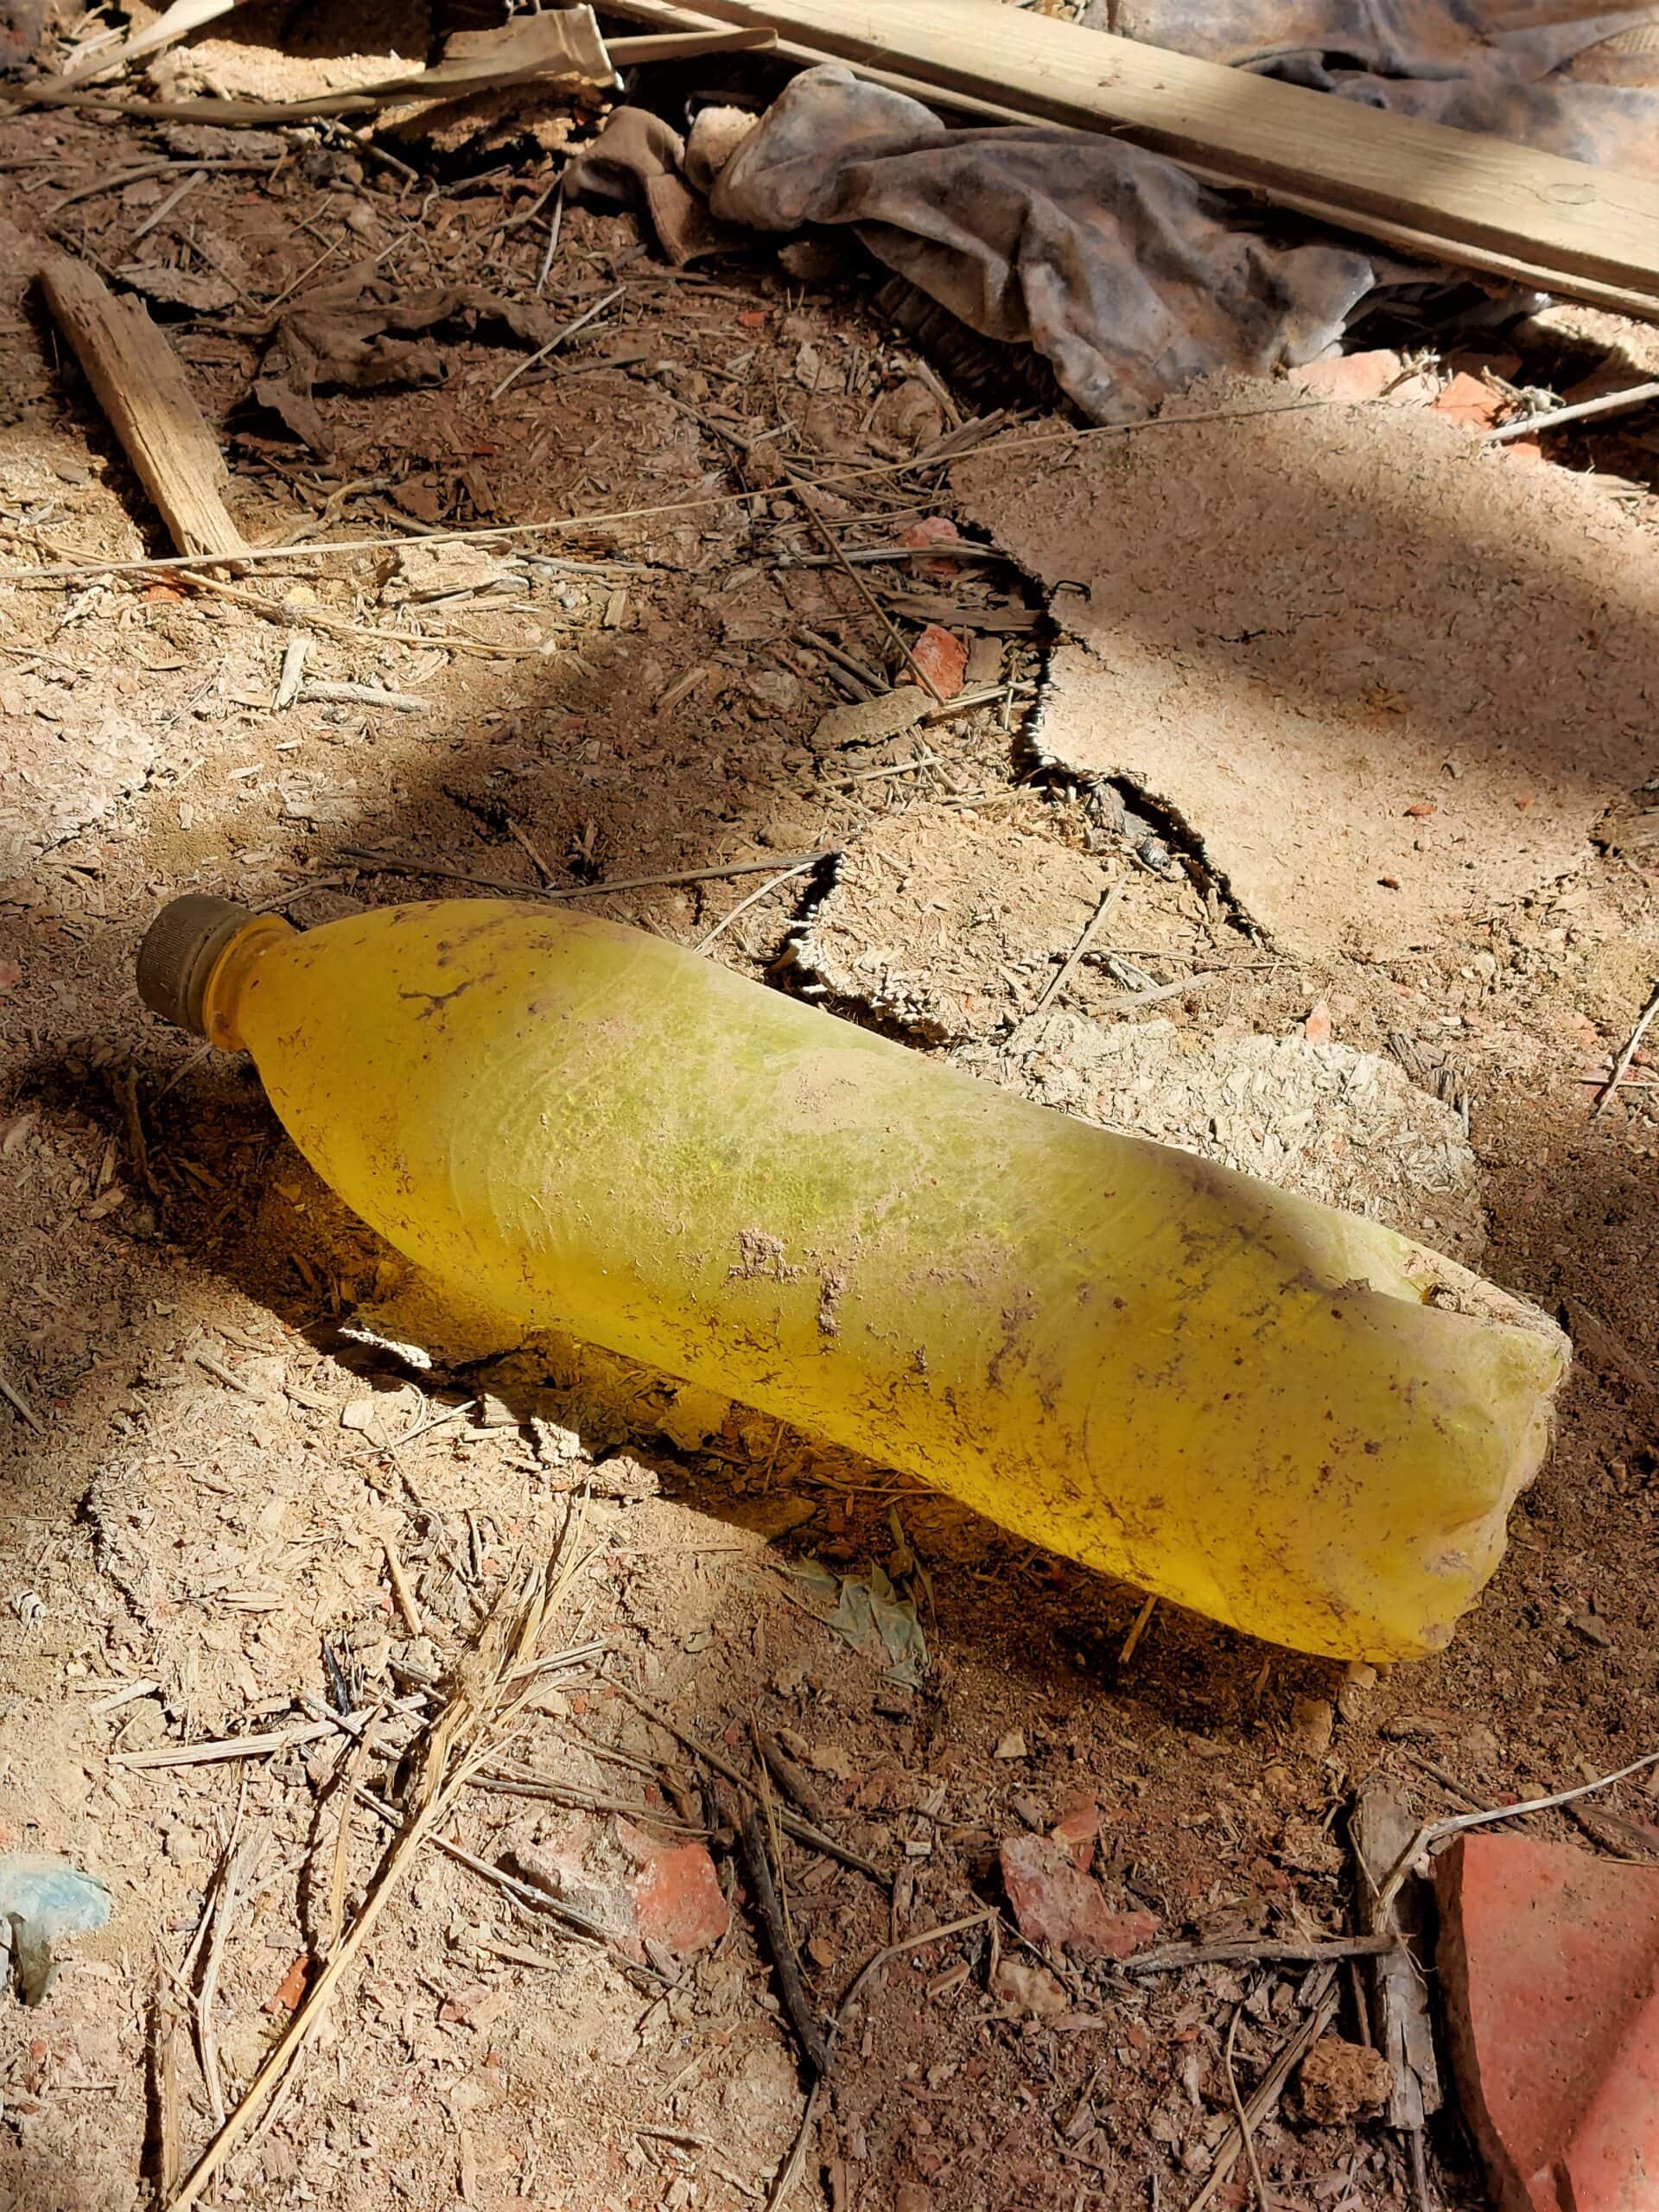 a yellow bottle lies on a dirt floor